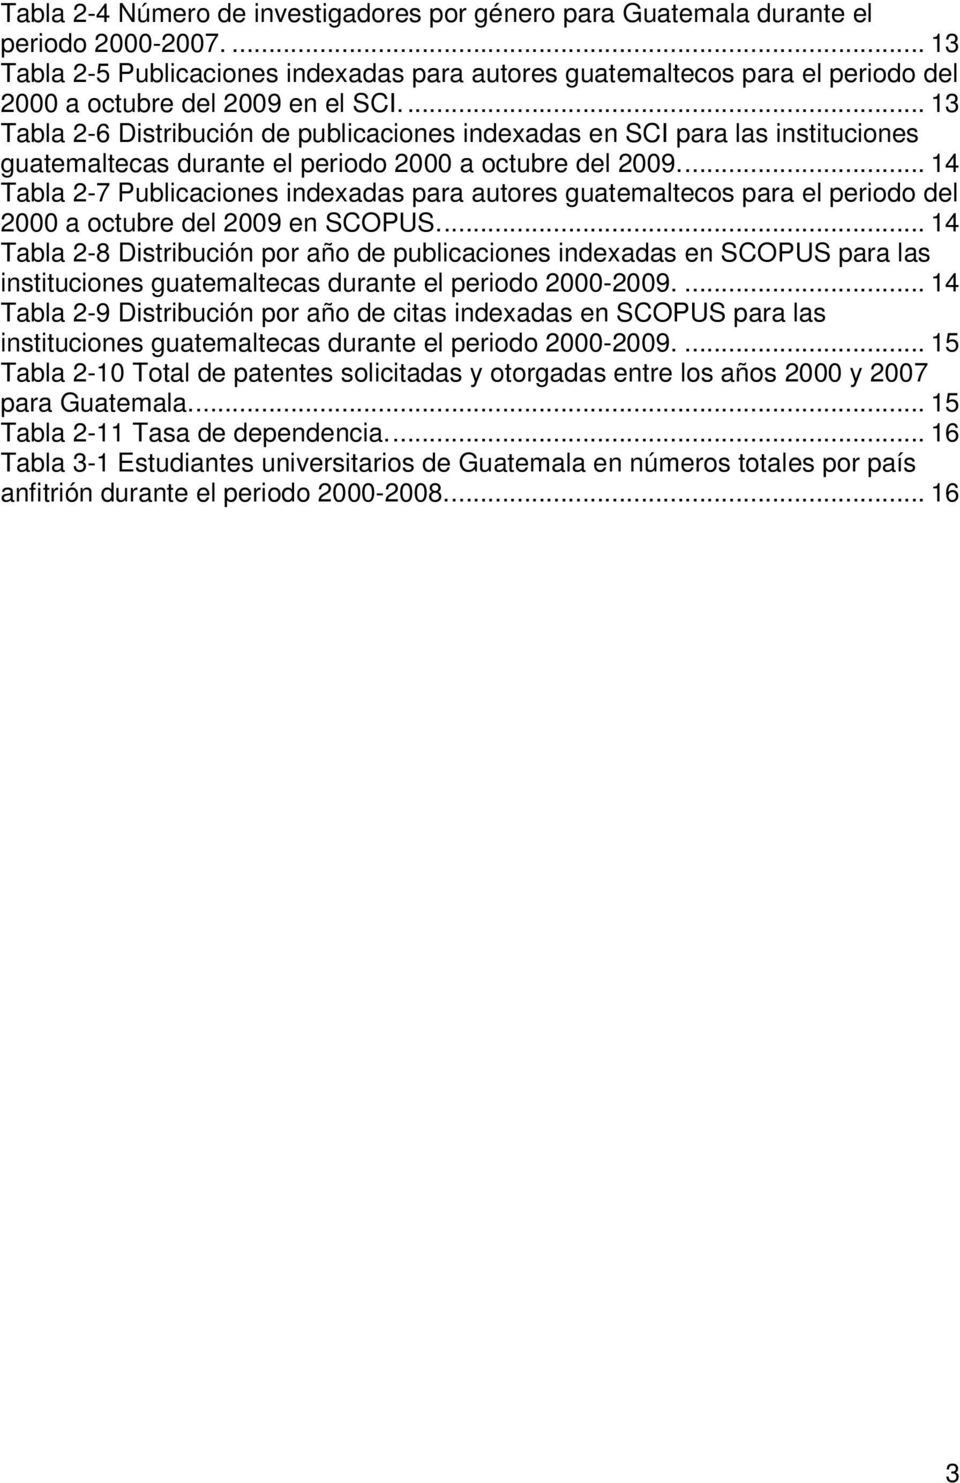 ... 13 Tabla 2-6 Distribución de publicaciones indexadas en SCI para las instituciones guatemaltecas durante el periodo 2000 a octubre del 2009.